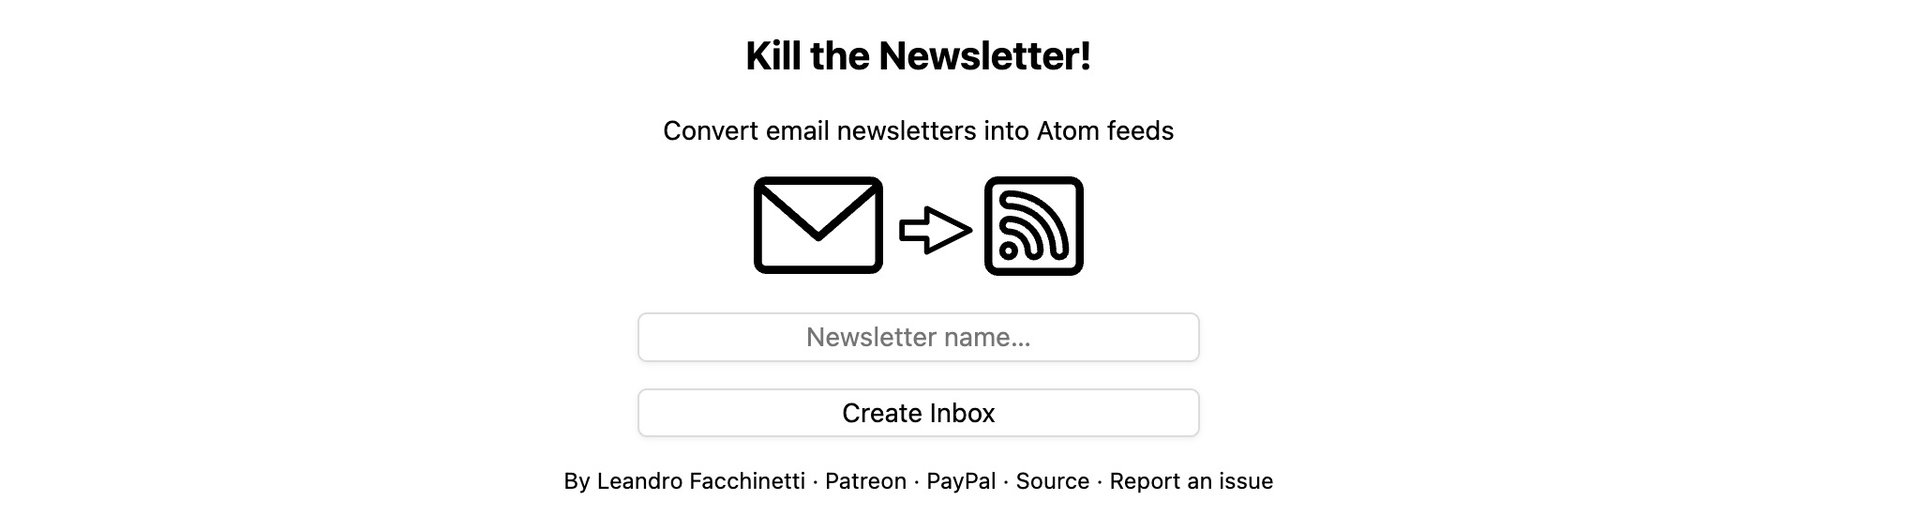 kill the newsletter